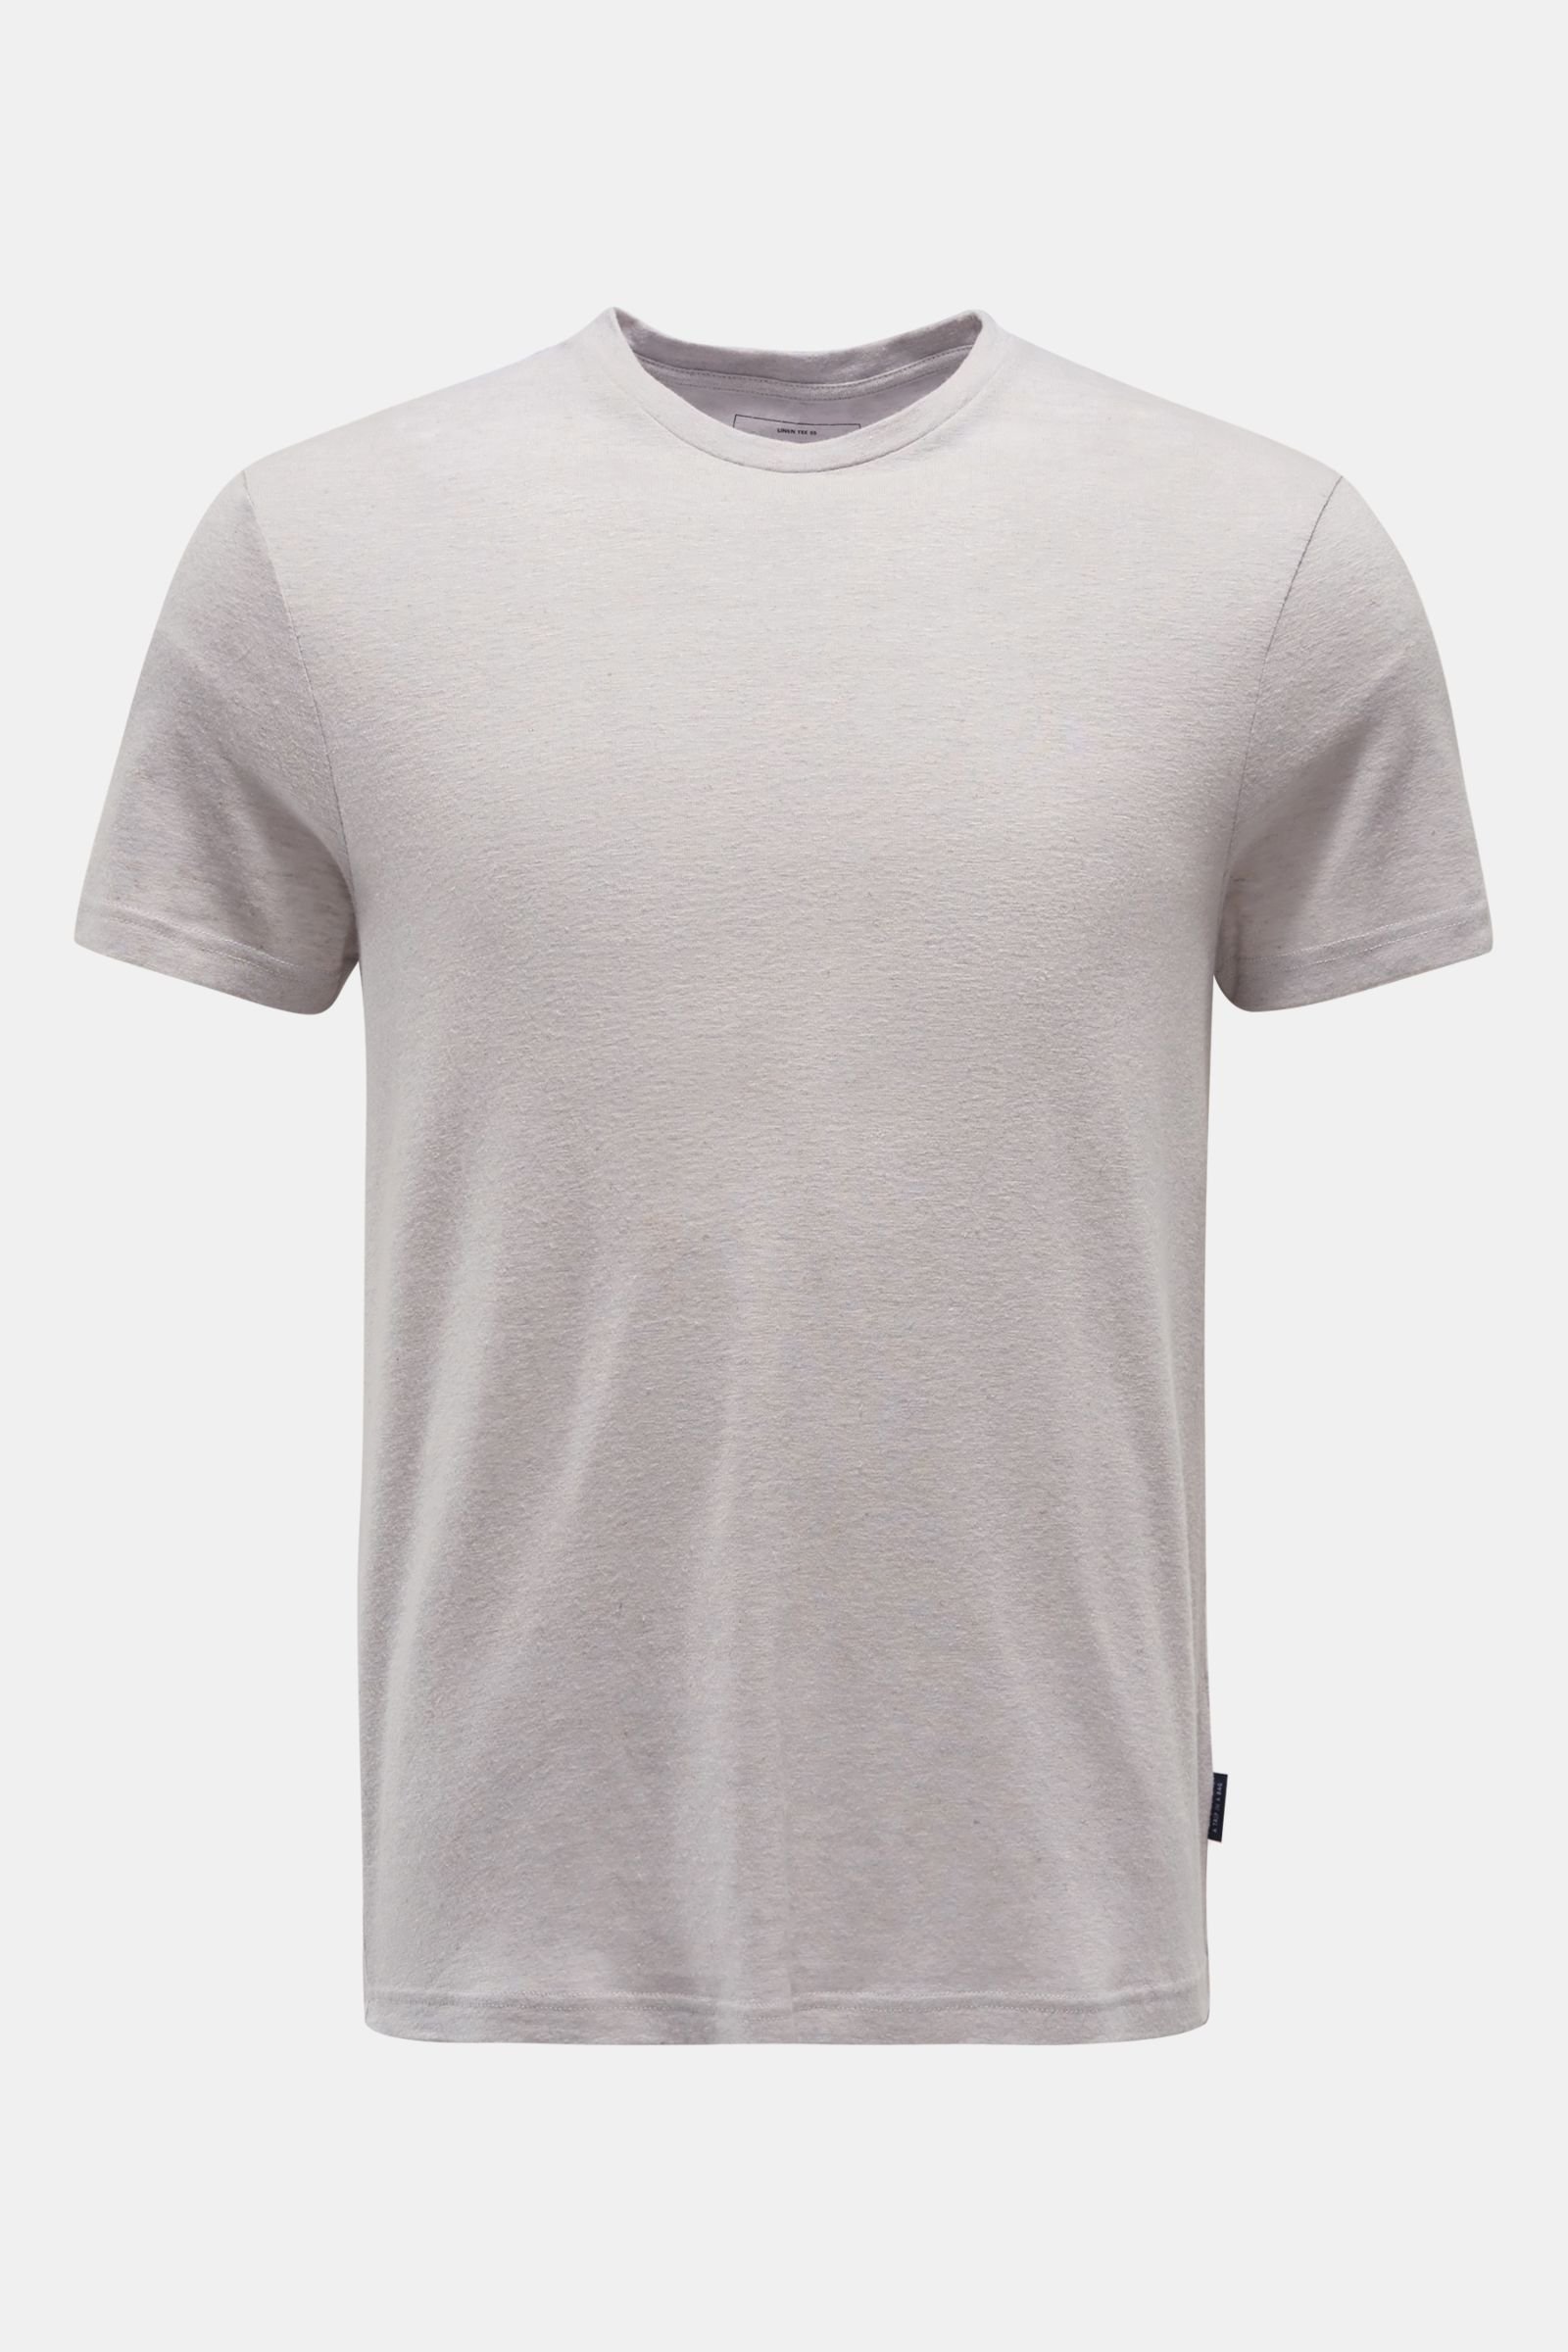 Crew neck T-shirt 'Linen Tee' light grey